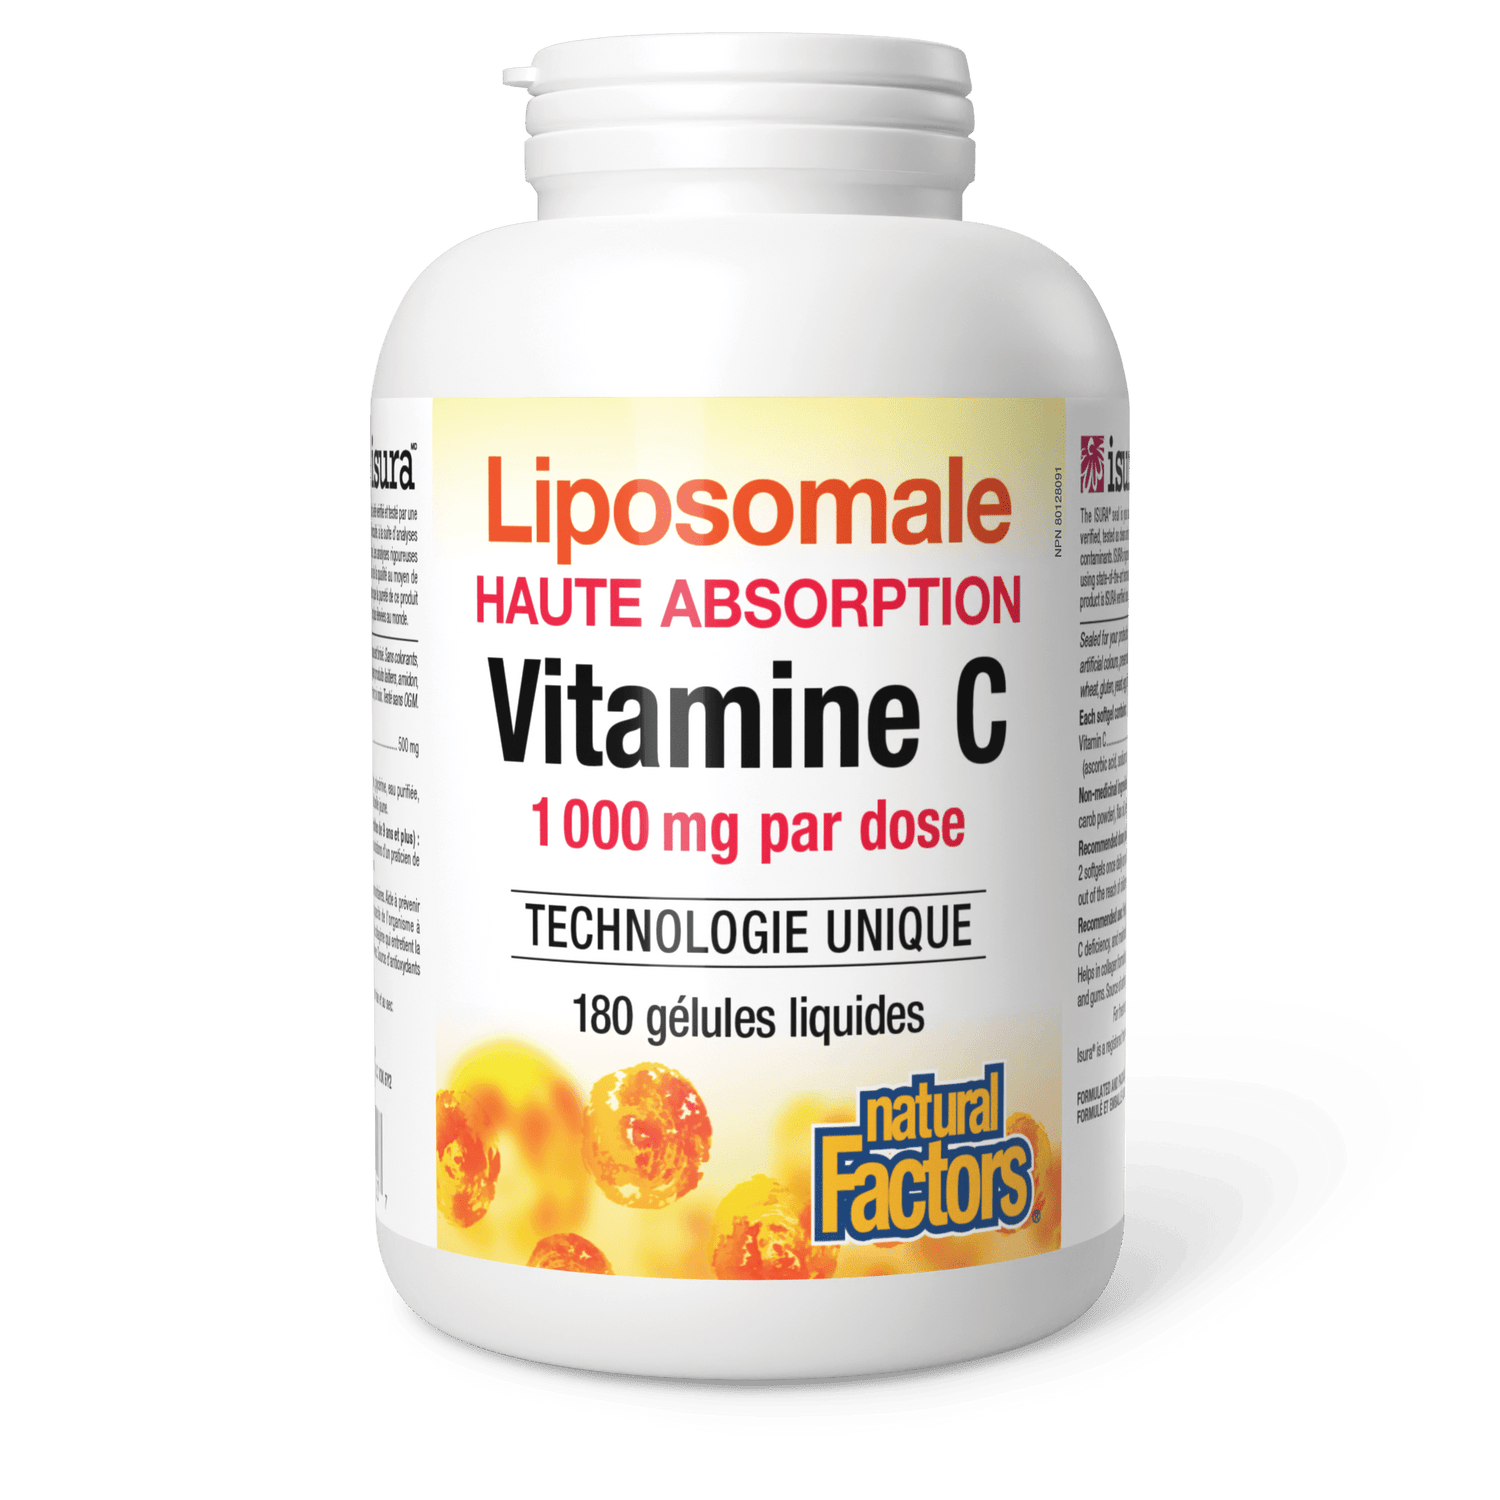 Vitamine C liposomale, Natural Factors|v|image|1320